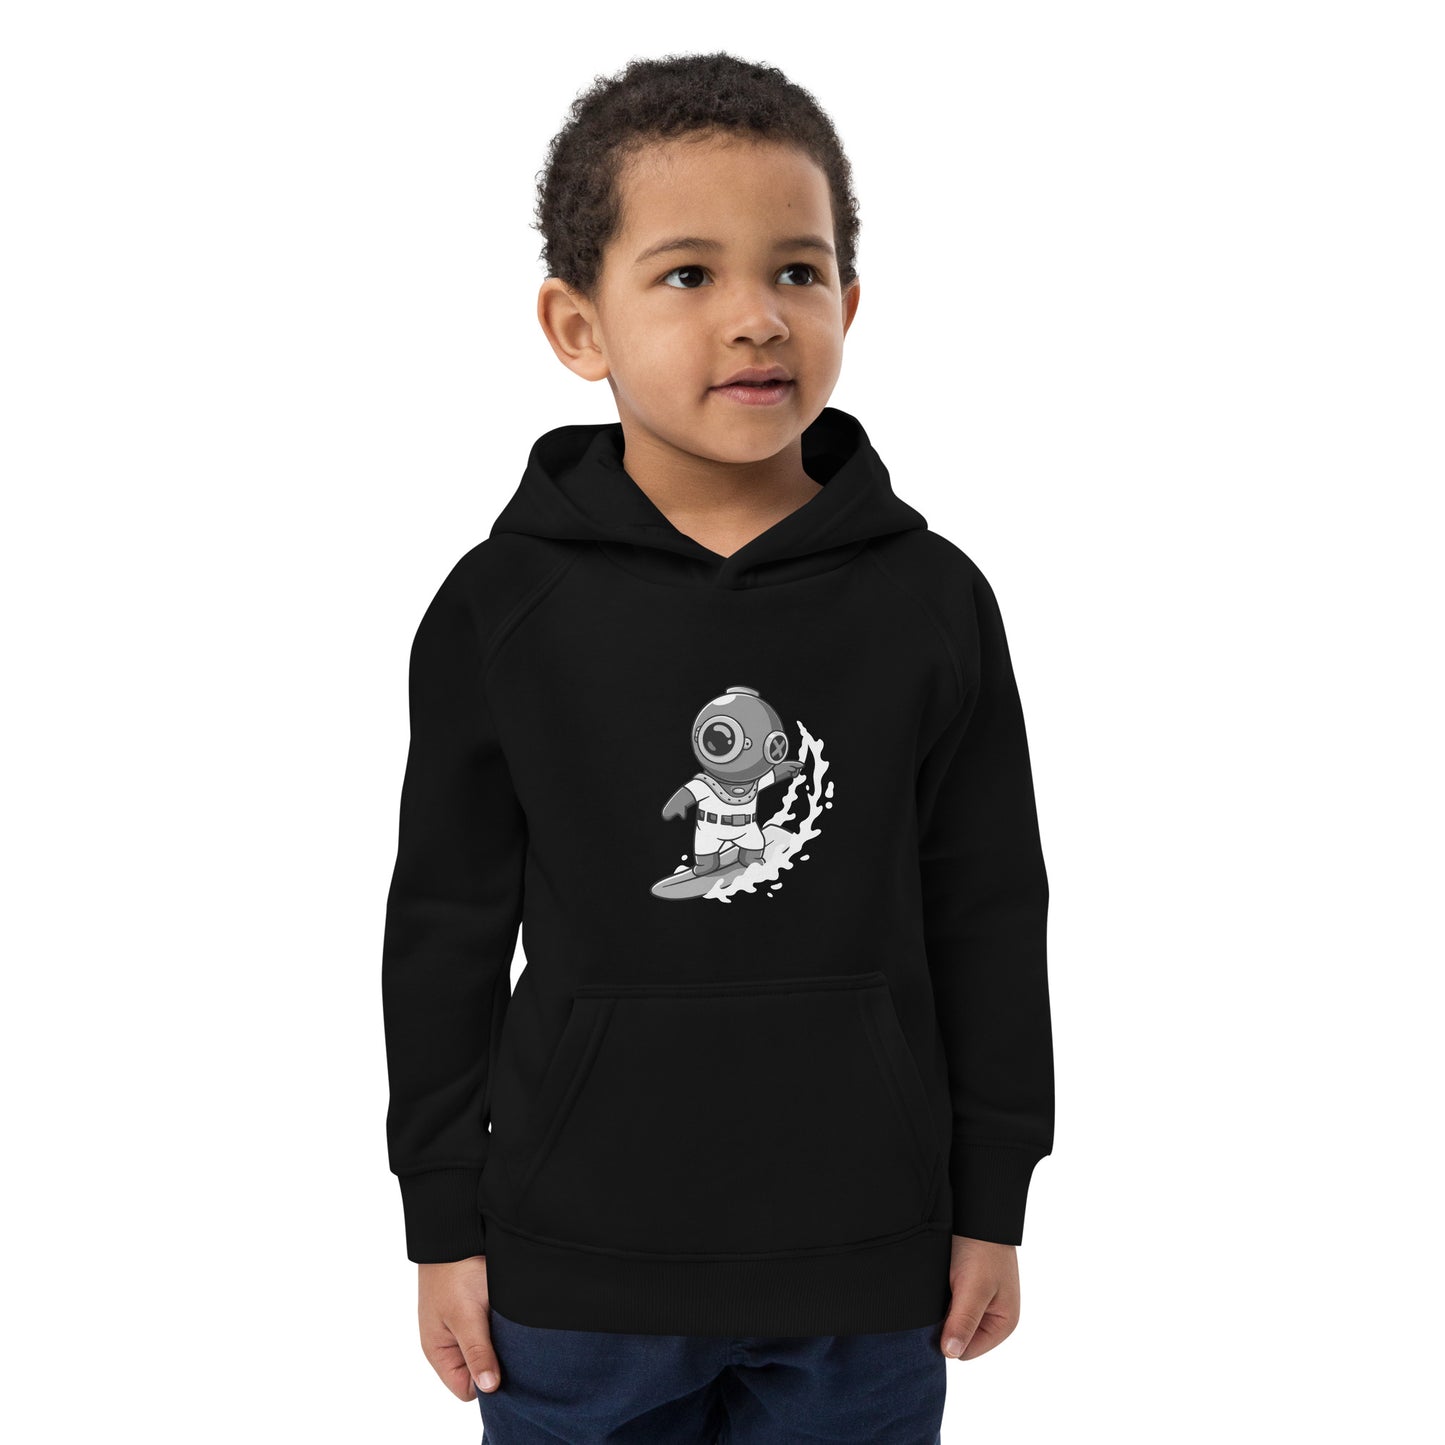 DeepSea Surfer Kids eco hoodie